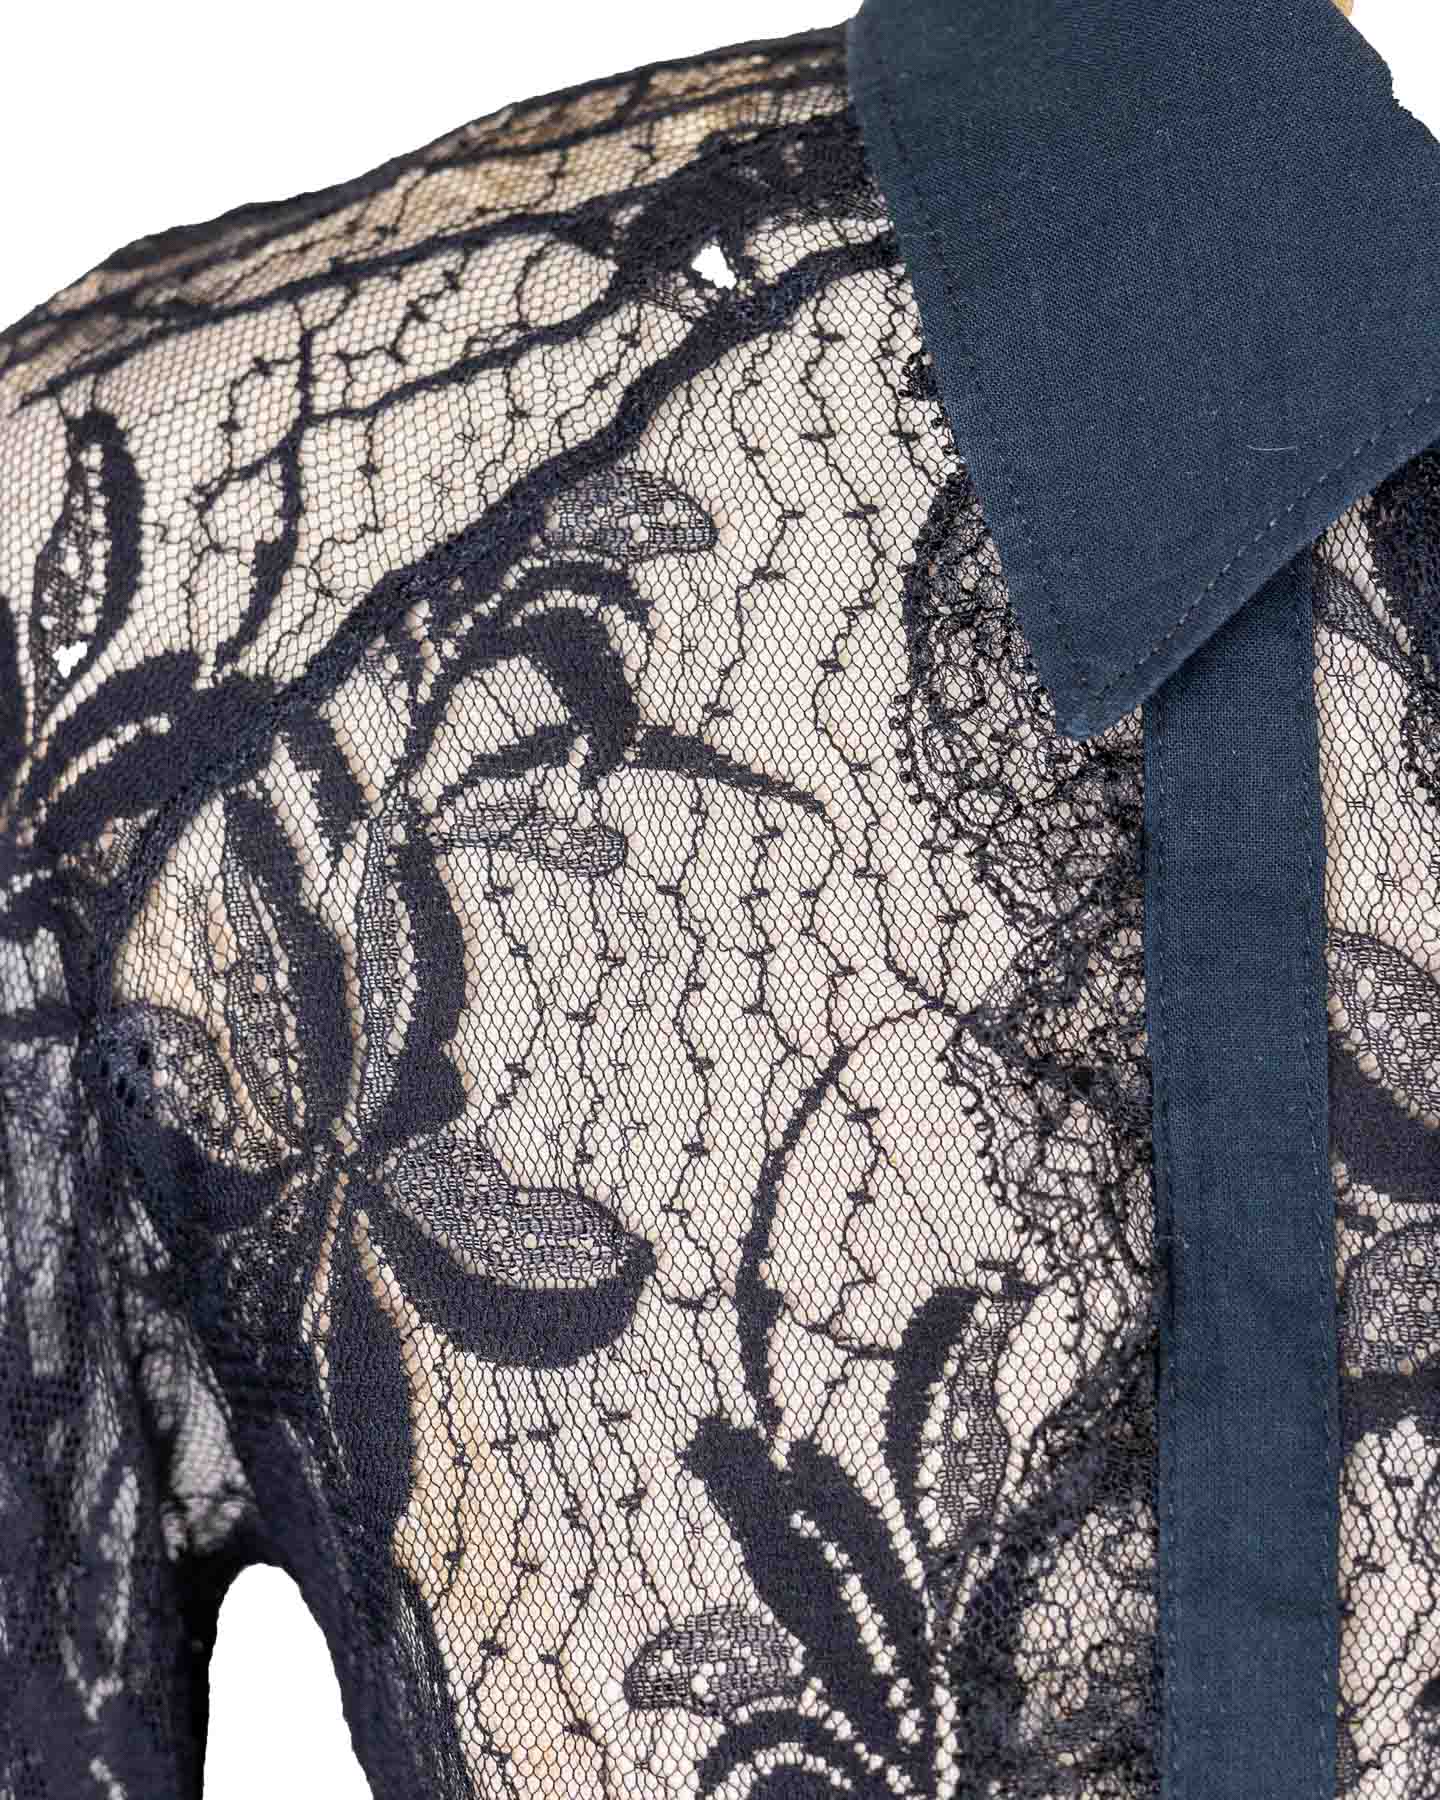 Dolce&amp;Gabbana - Chemise en dentelle - Noir 